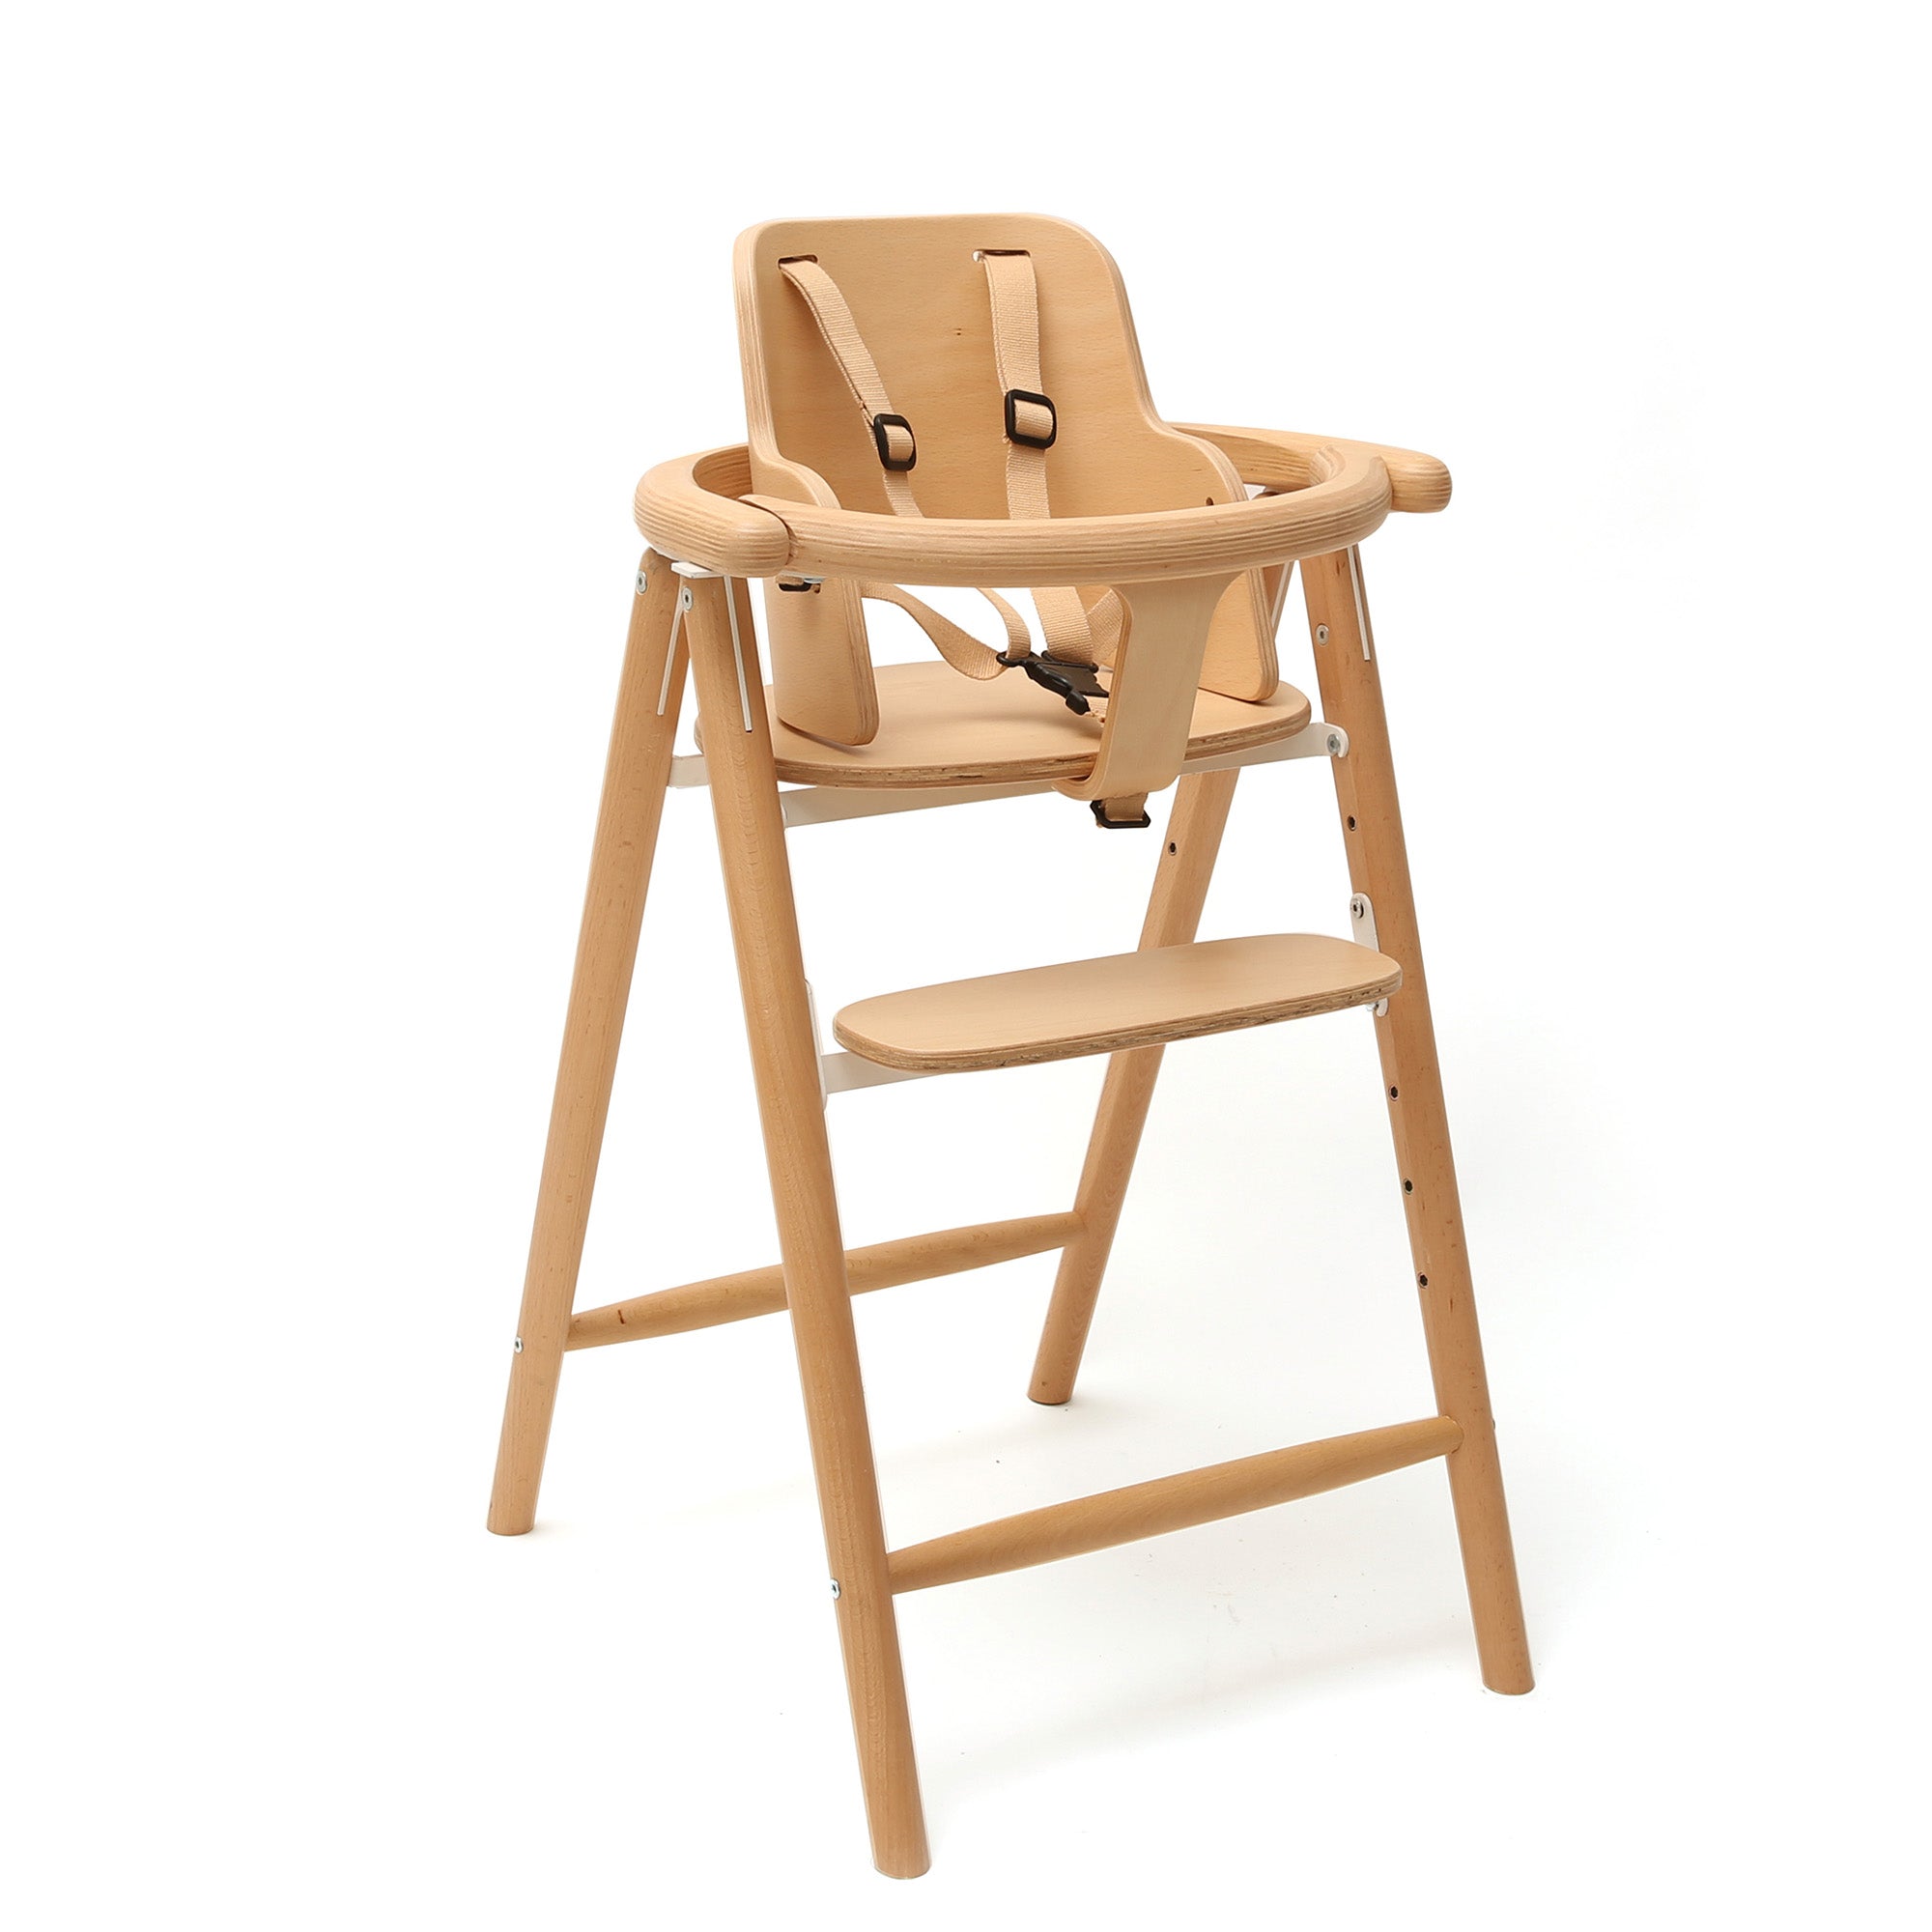 Baby Set for TOBO Evolutionary Chair